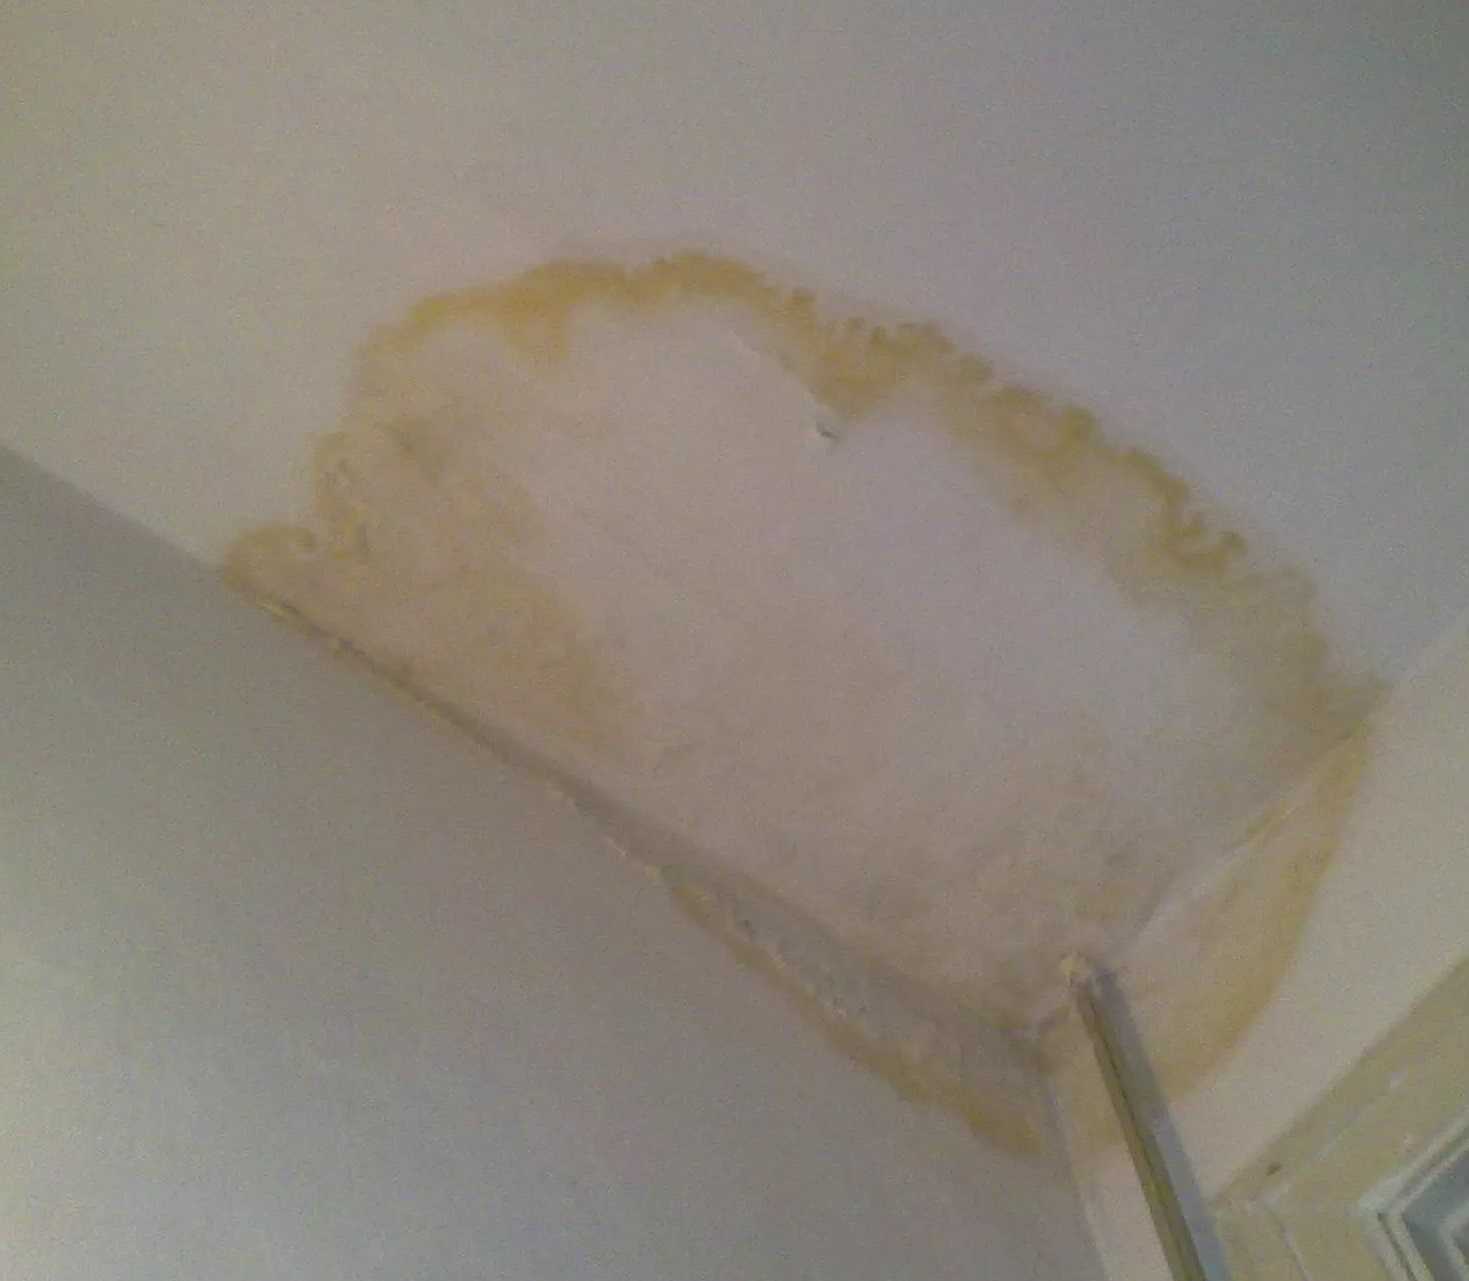 Почему водоэмульсионка при покраске потолка оставляет разводы и как этого избежать